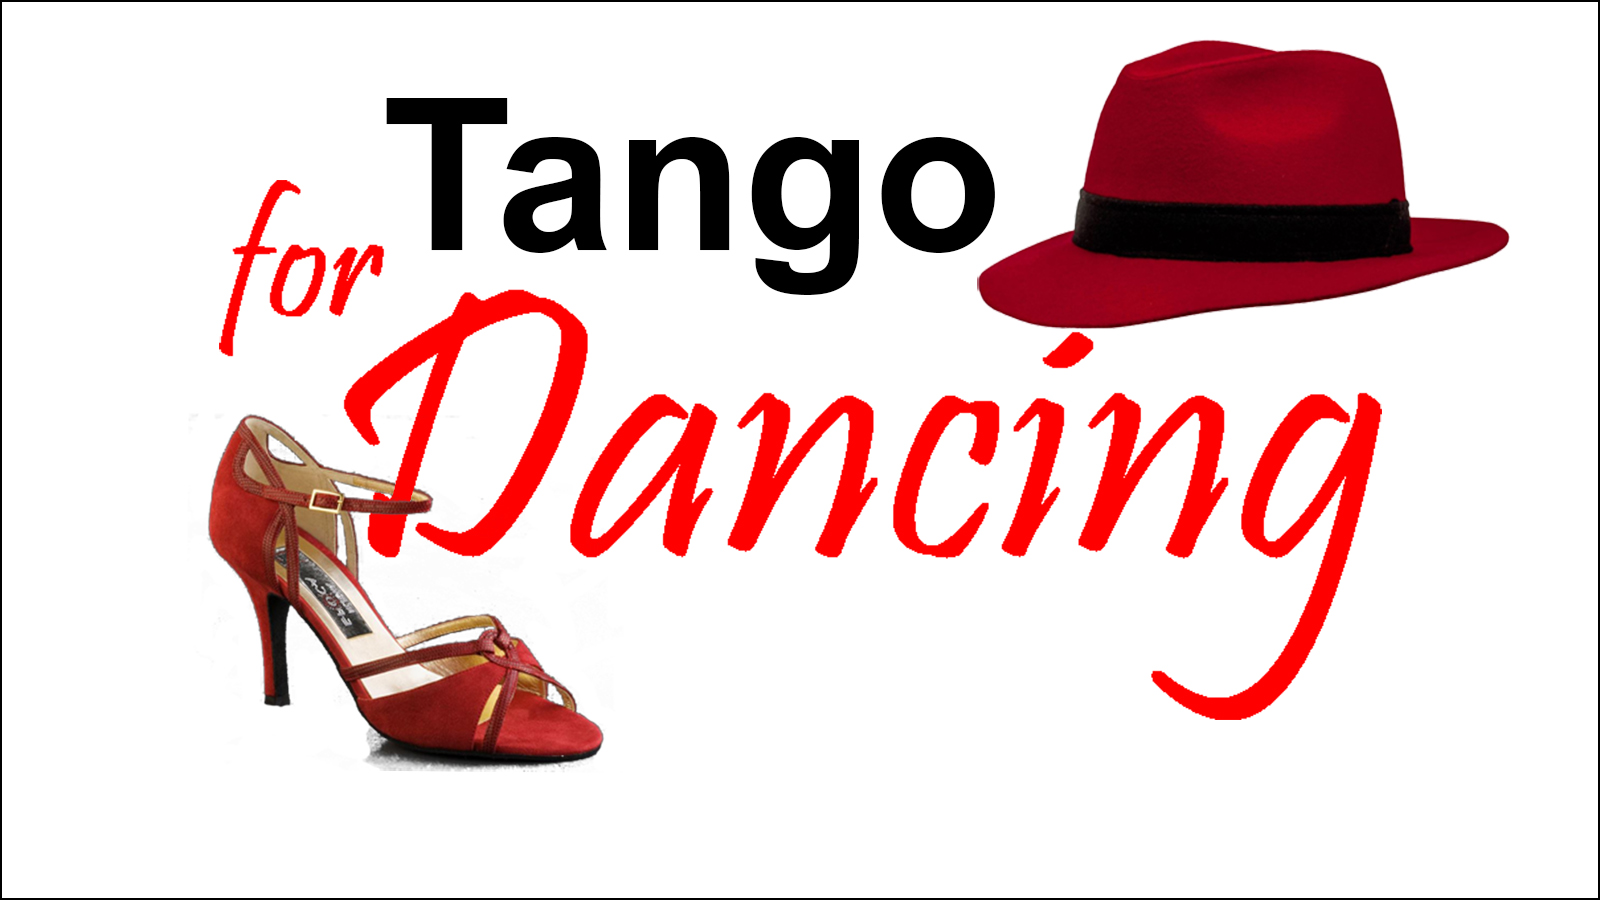 tengo tango shoes